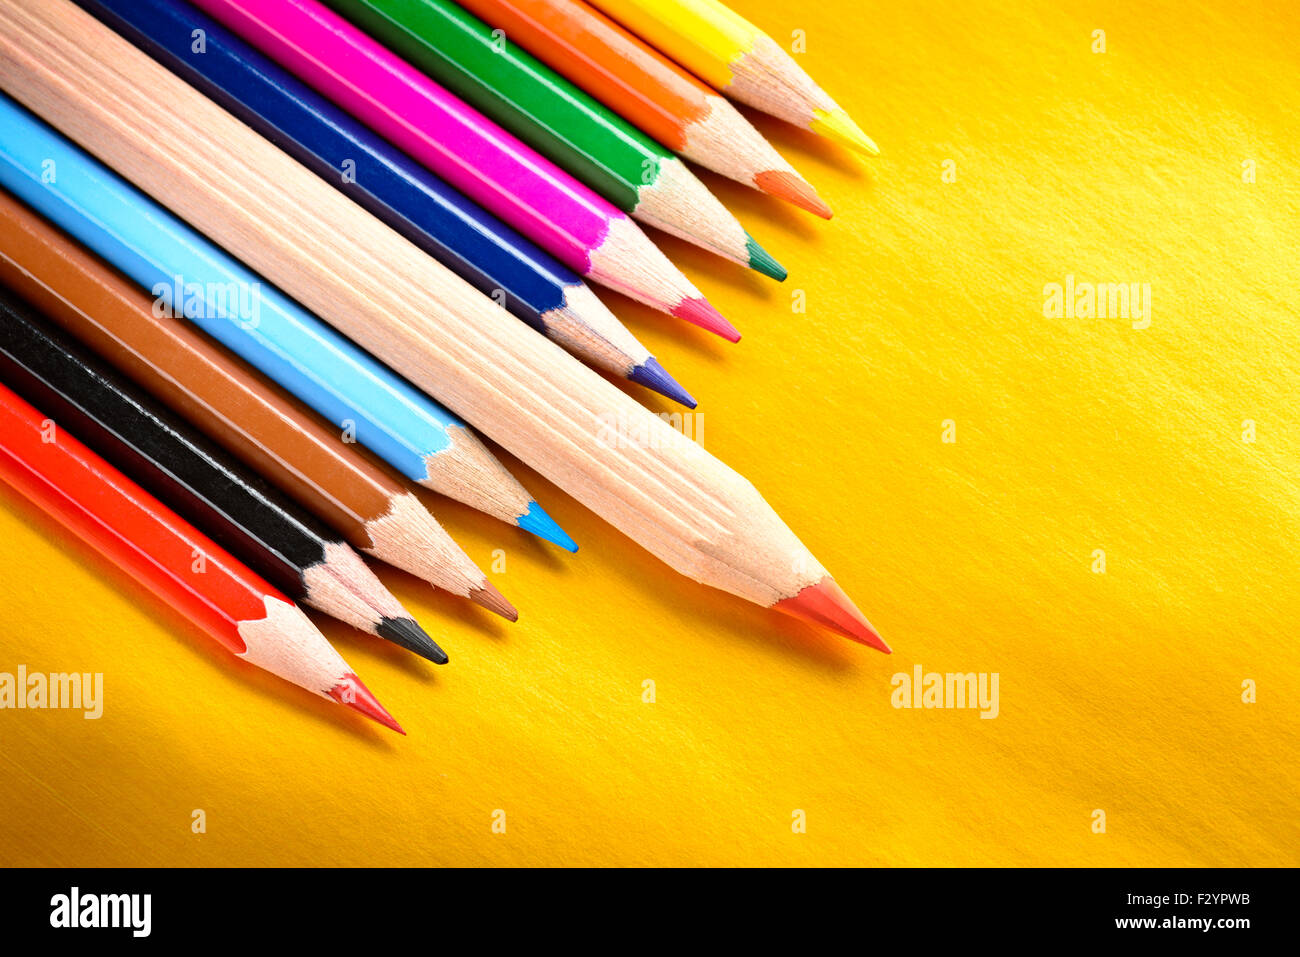 Crayon rouge debout à partir d'un tas de crayons de couleur, concept de leadership Banque D'Images